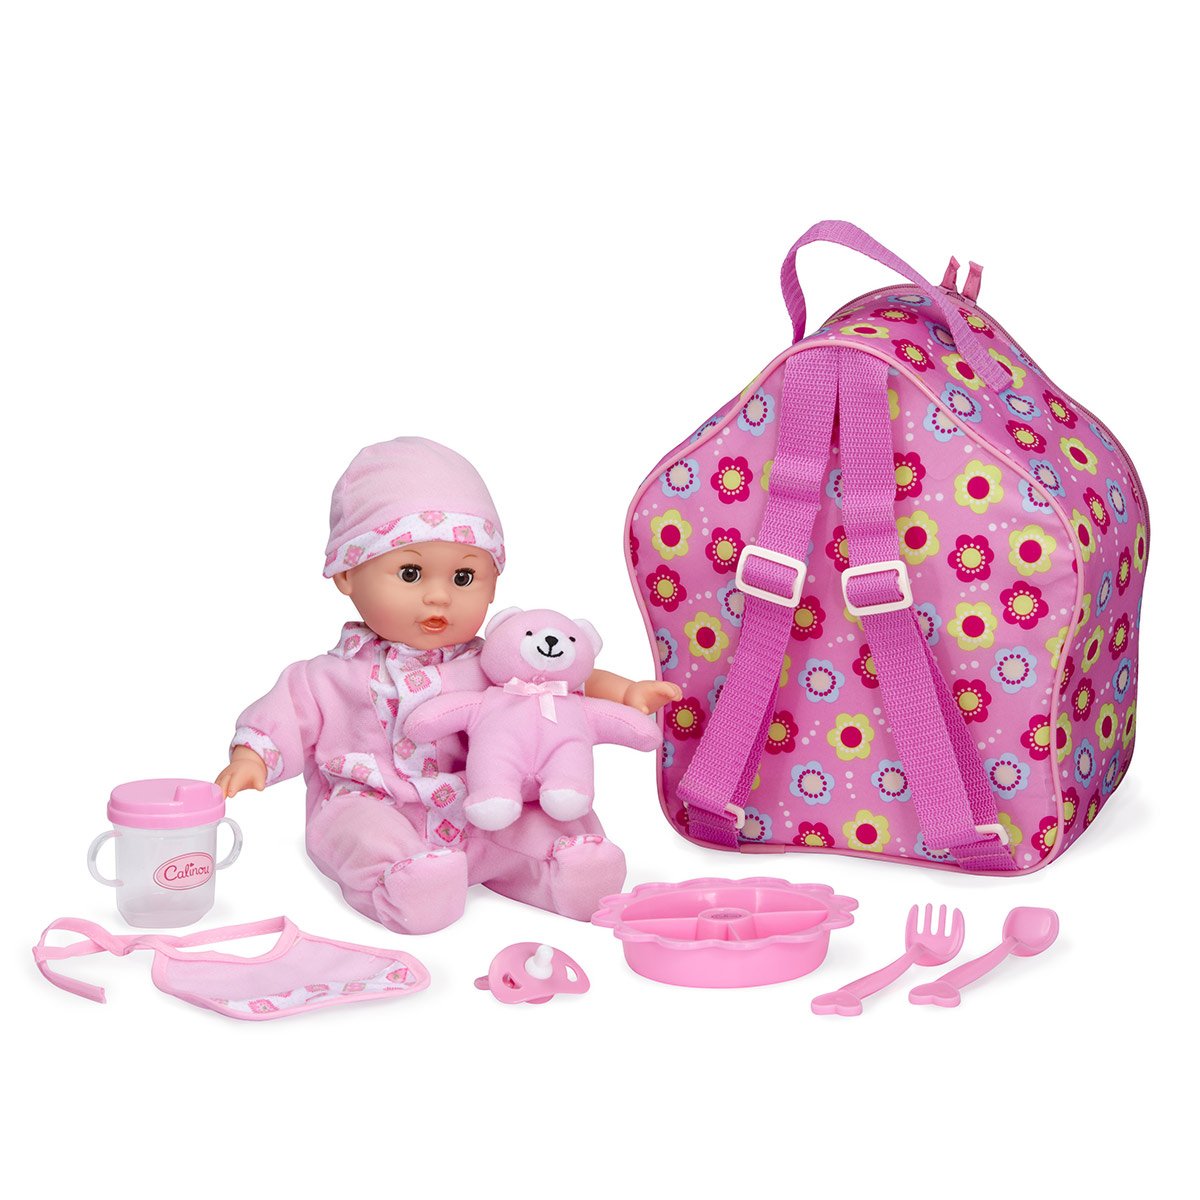 Vous & amp; Me 69928 30 accessoires de soins pour bébé poupée dans un sac 